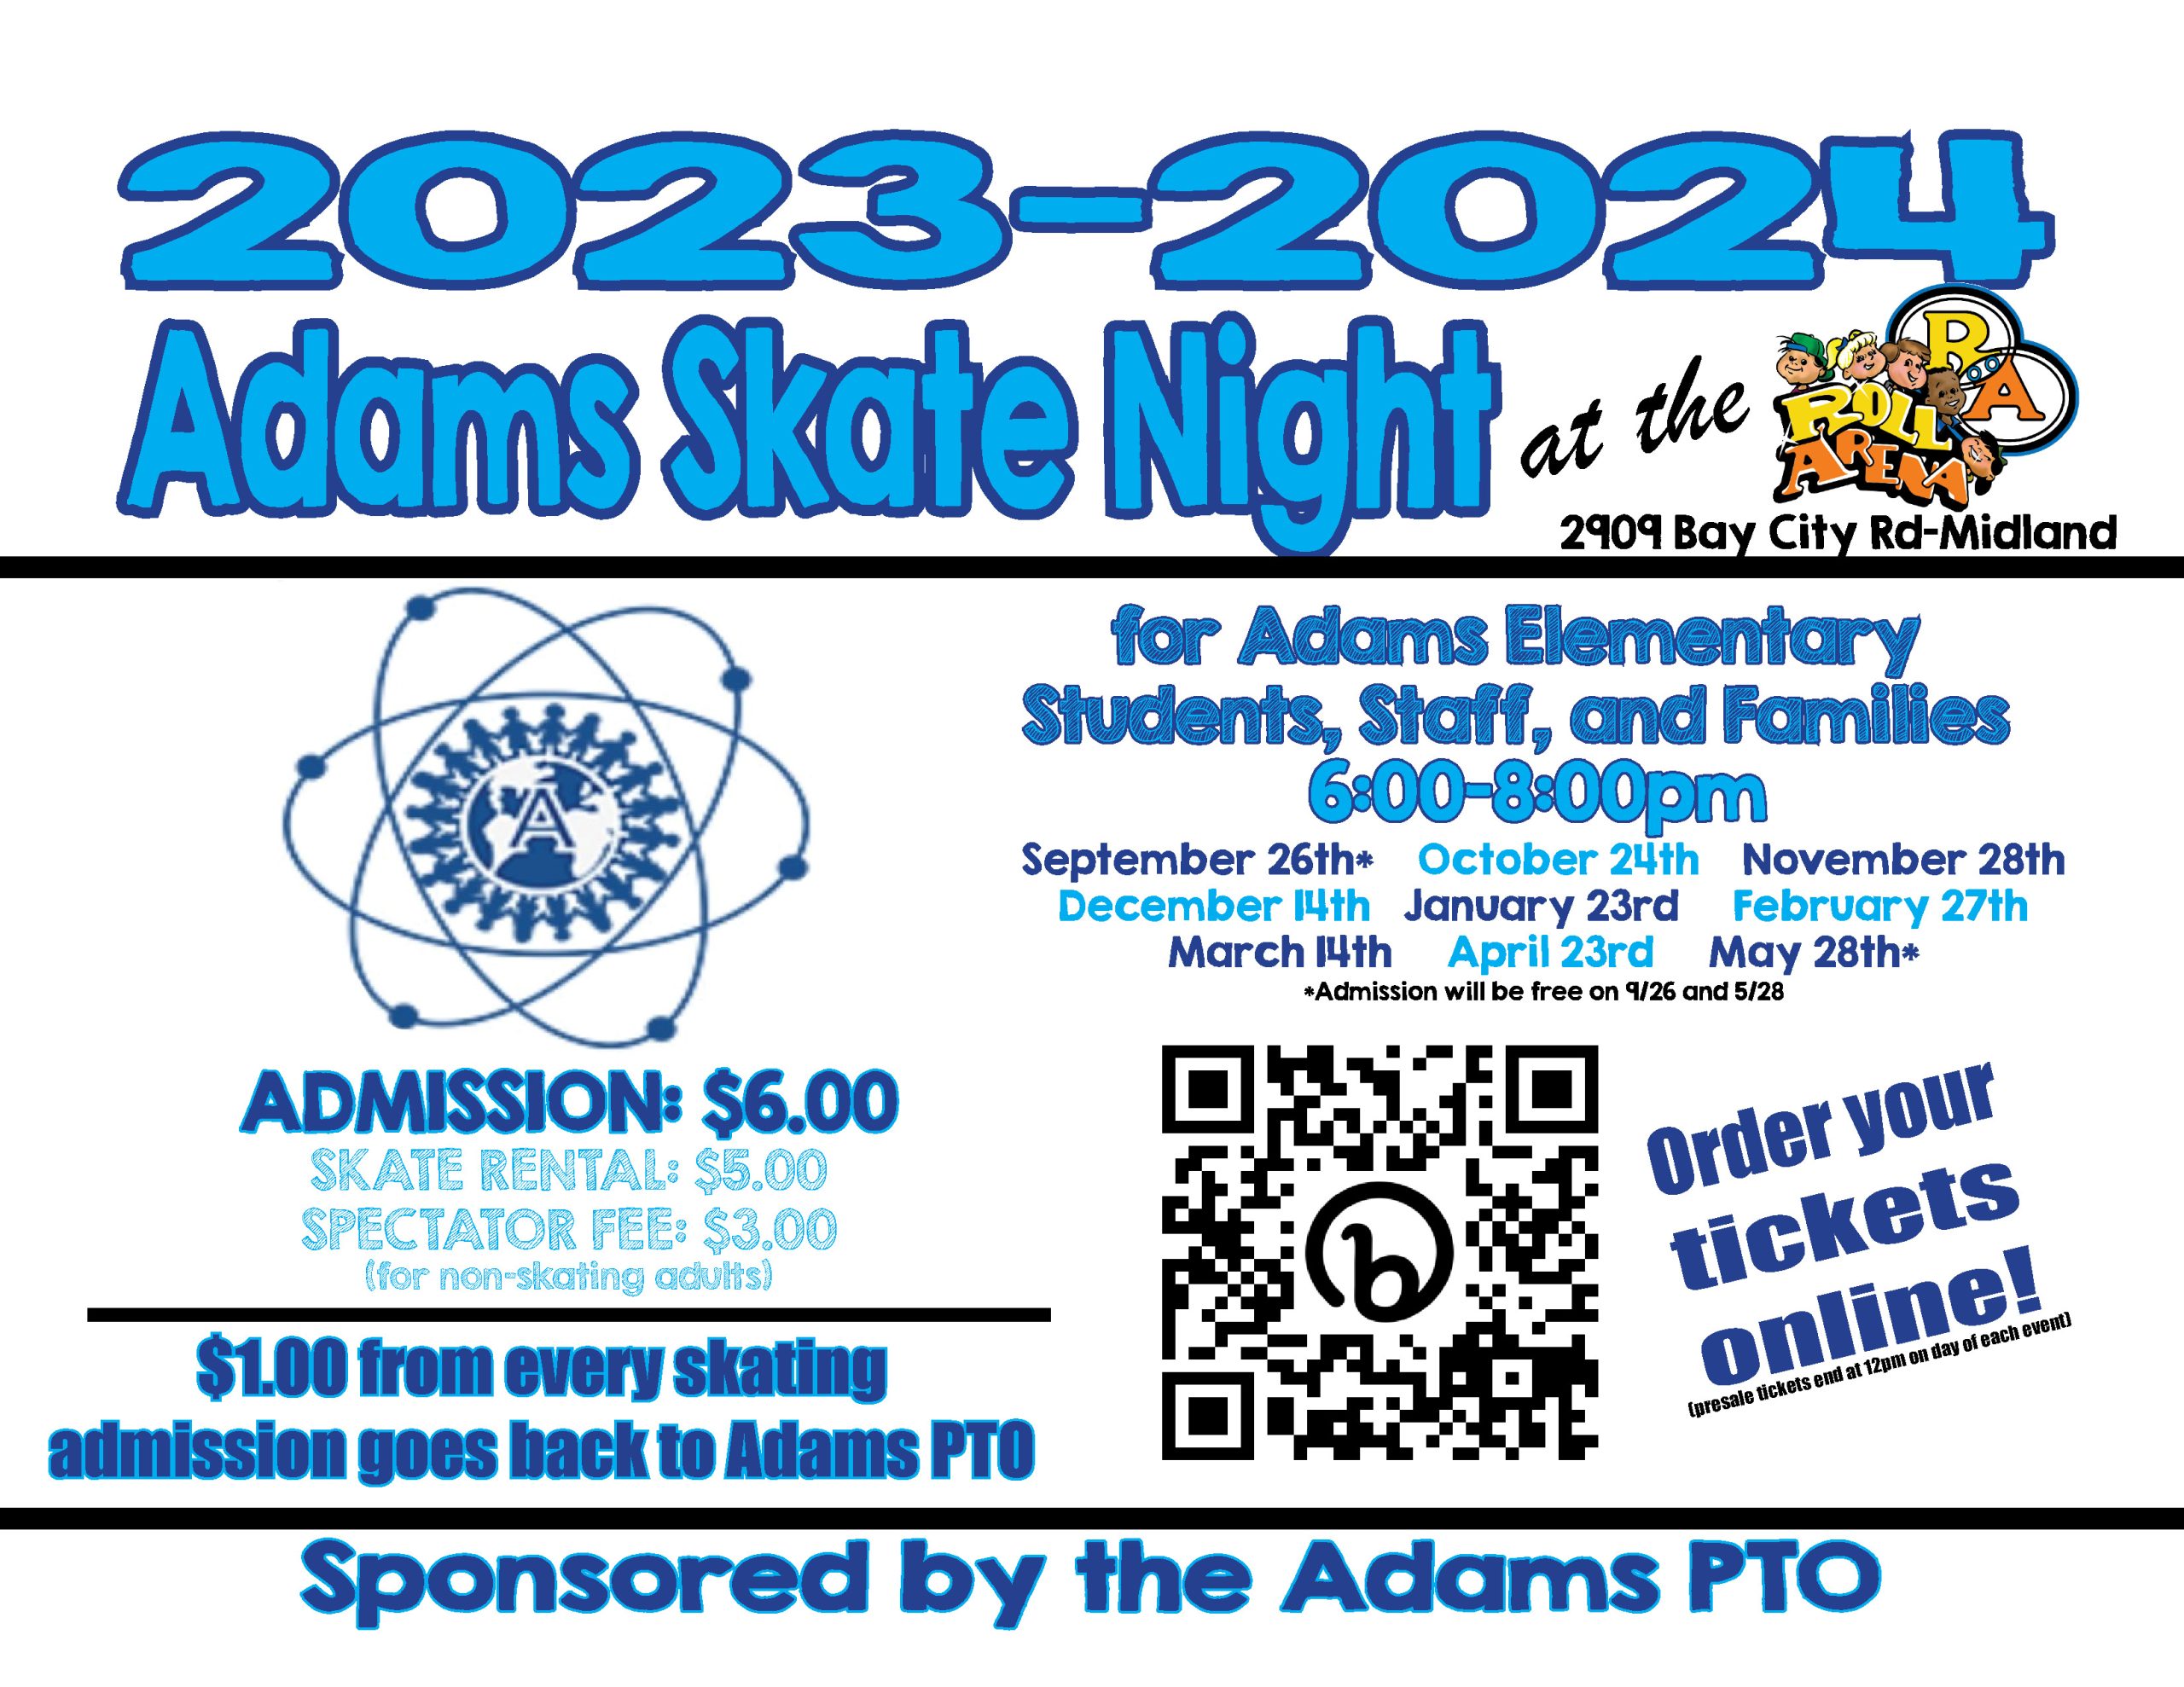 2023-2024 Adams Skate Nights